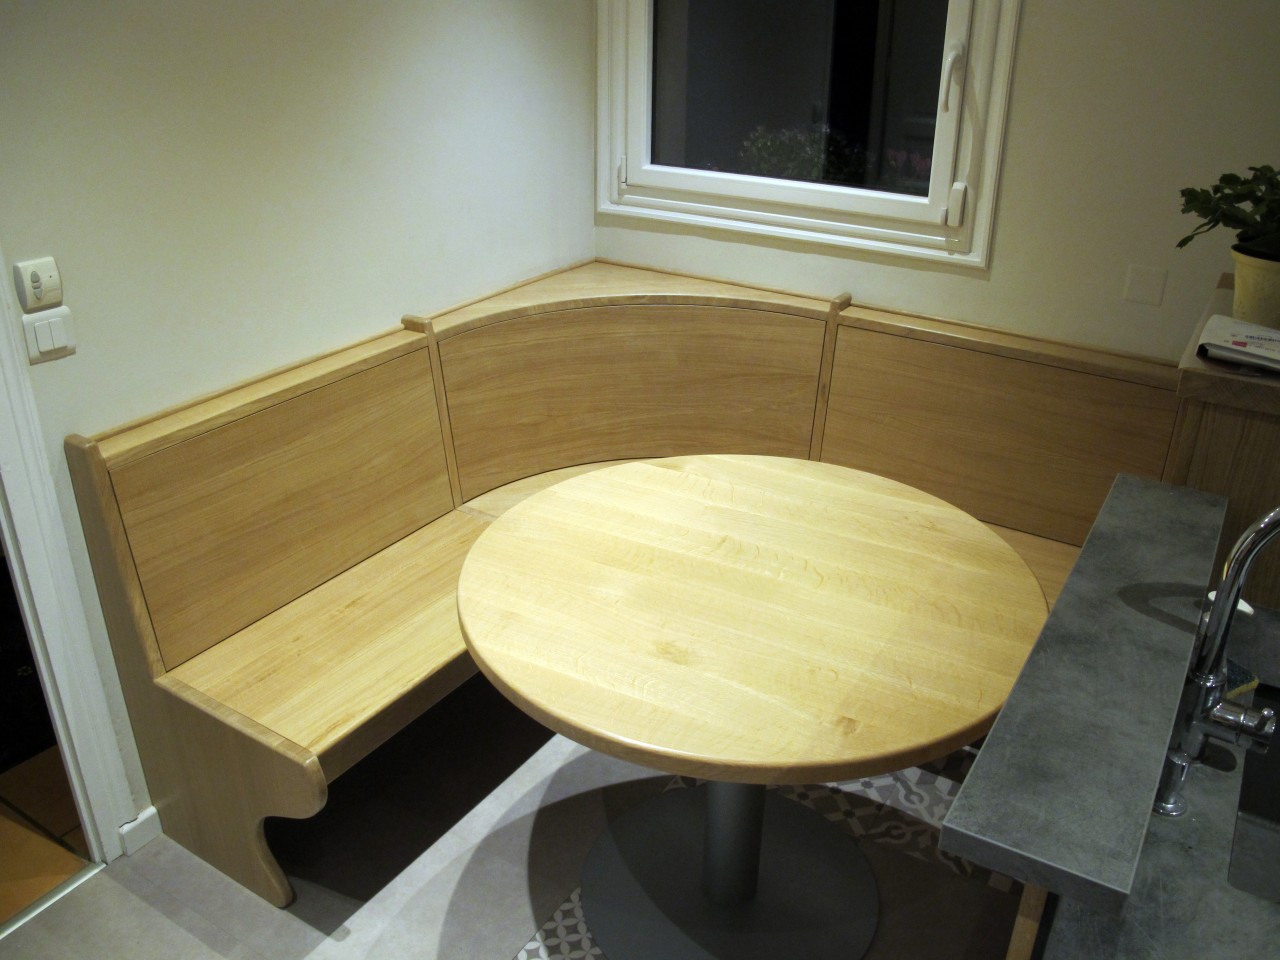 La banquette d'angle et la table ronde en chêne dans leur globalité. Elles permettent de créer un espace conviviale dans la cuisine.